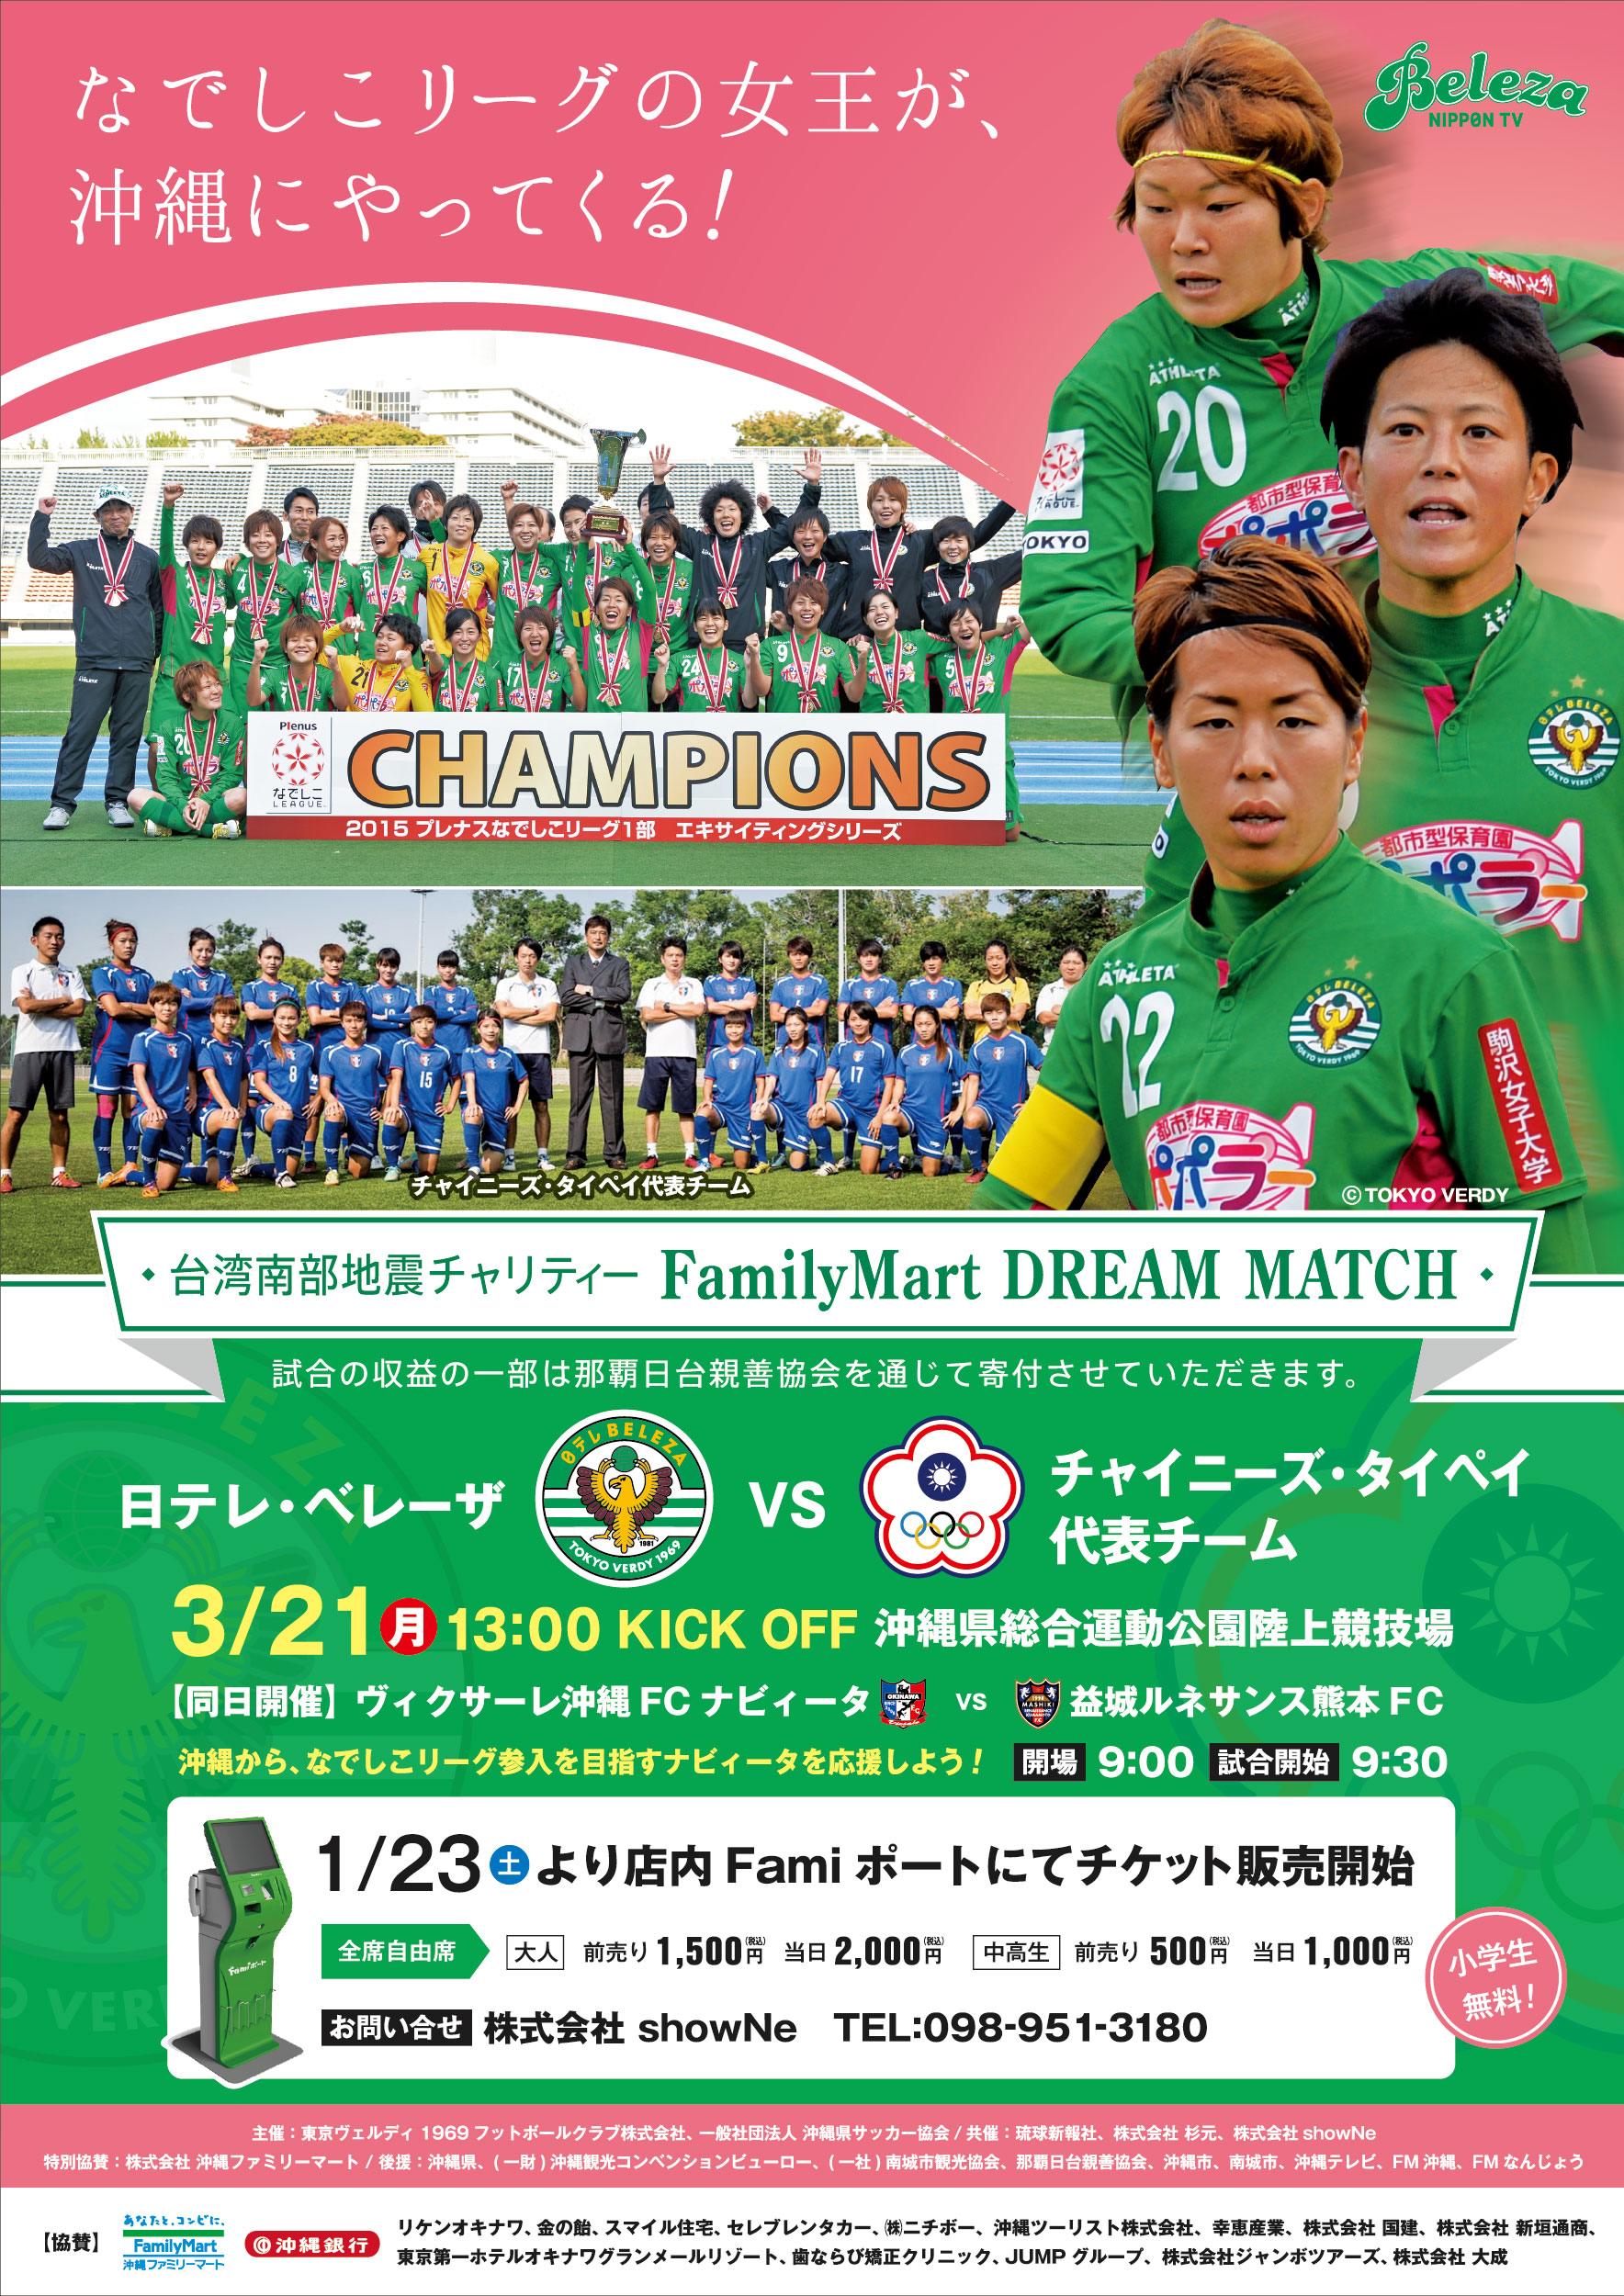 沖縄で女子サッカー交流チャリティーマッチ開催 台湾新聞